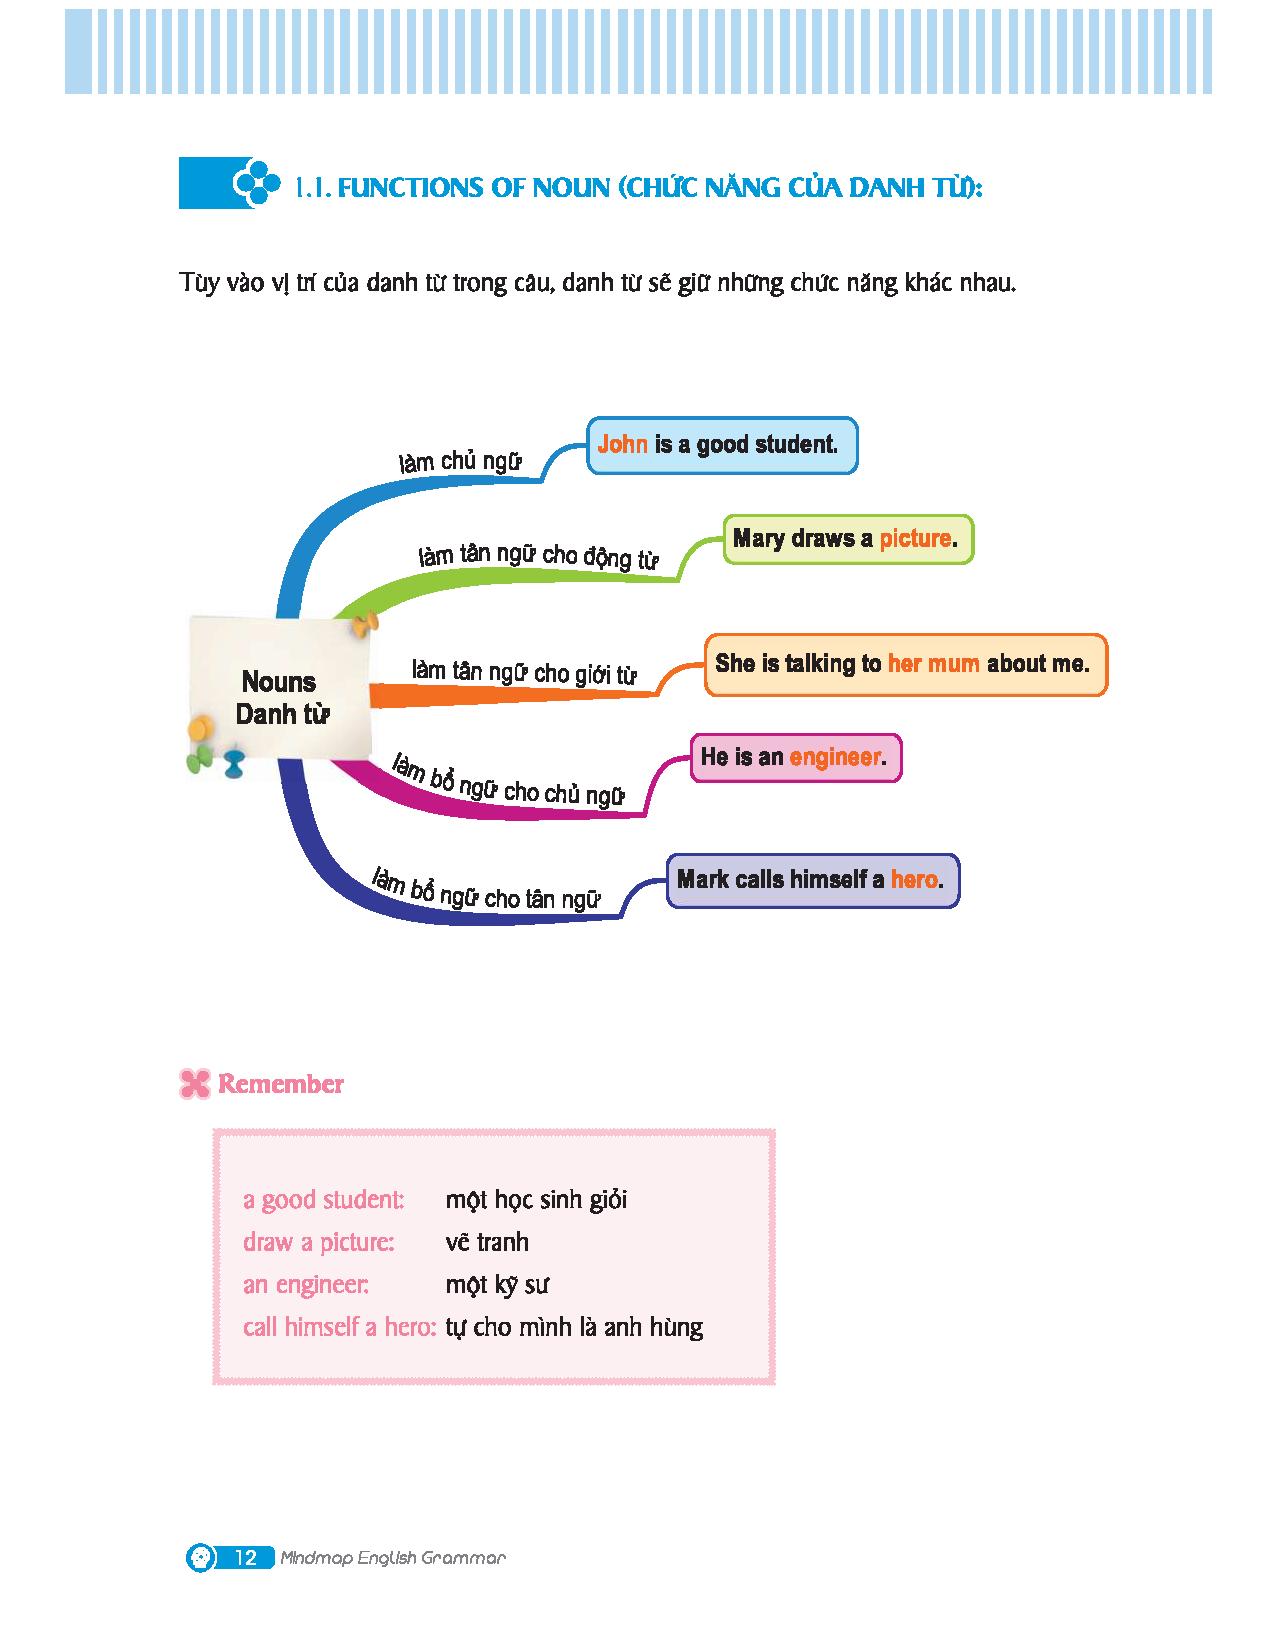 Mind Map English Grammar – Ngữ pháp giờ anh bởi vì sơ đồ vật suy nghĩ ...